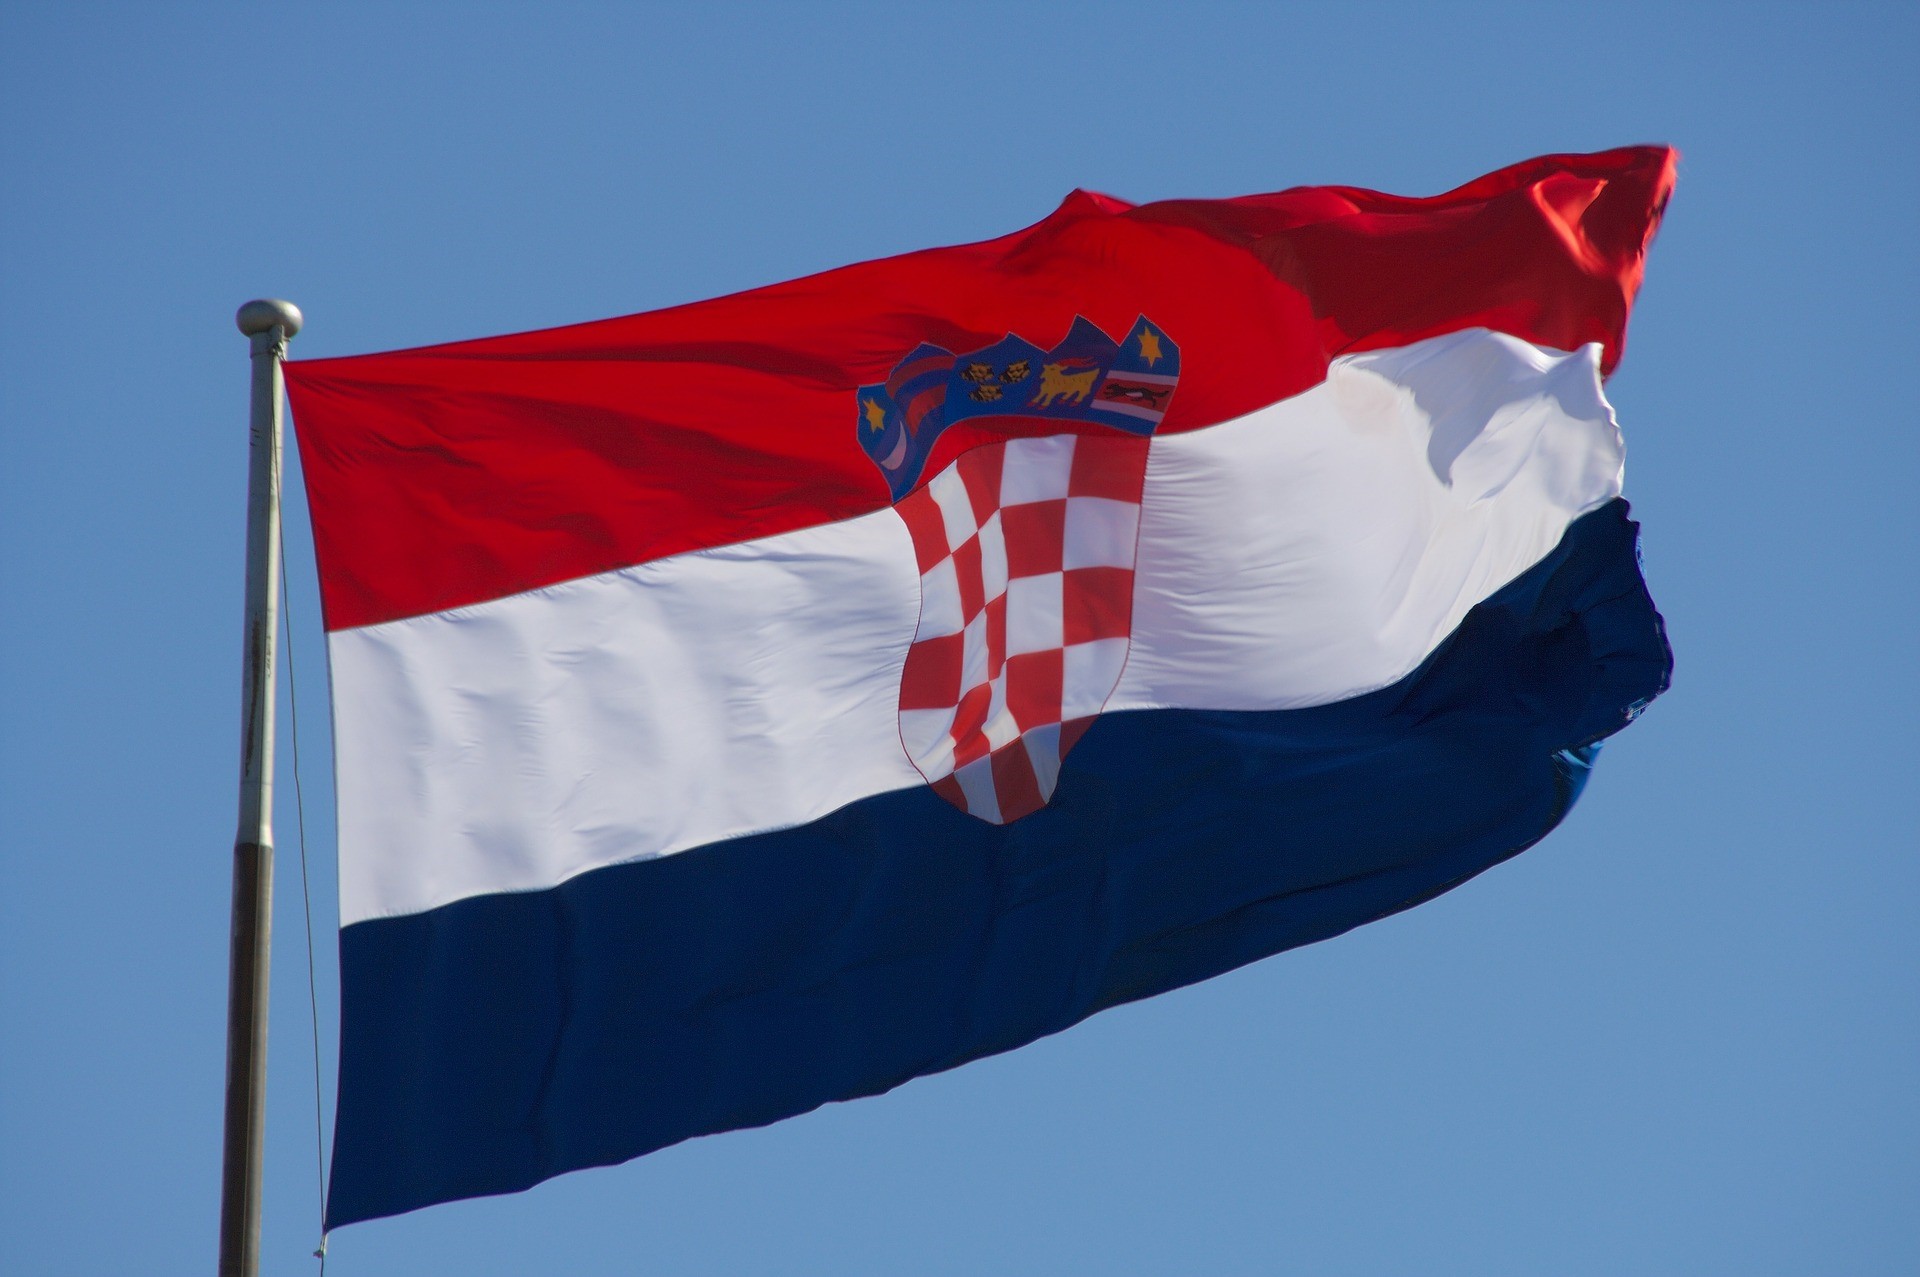 Expat Croatia CROBEX UCITS ETF (ECDC ETF) är en börshandlad fond som följer utvecklingen av CROBEX Index på Zagreb Stock Exchange, med hjälp av den direkta fysiska replikeringsmetoden. Det är noterat på den bulgariska börsen, på Frankfurtbörsen (XETRA) och på Ljubljanabörsen. Det är lämpligt för bulgariska och utländska investerare som vill ha en likvid och diversifierad exponering mot den kroatiska marknaden och regionen som helhet.